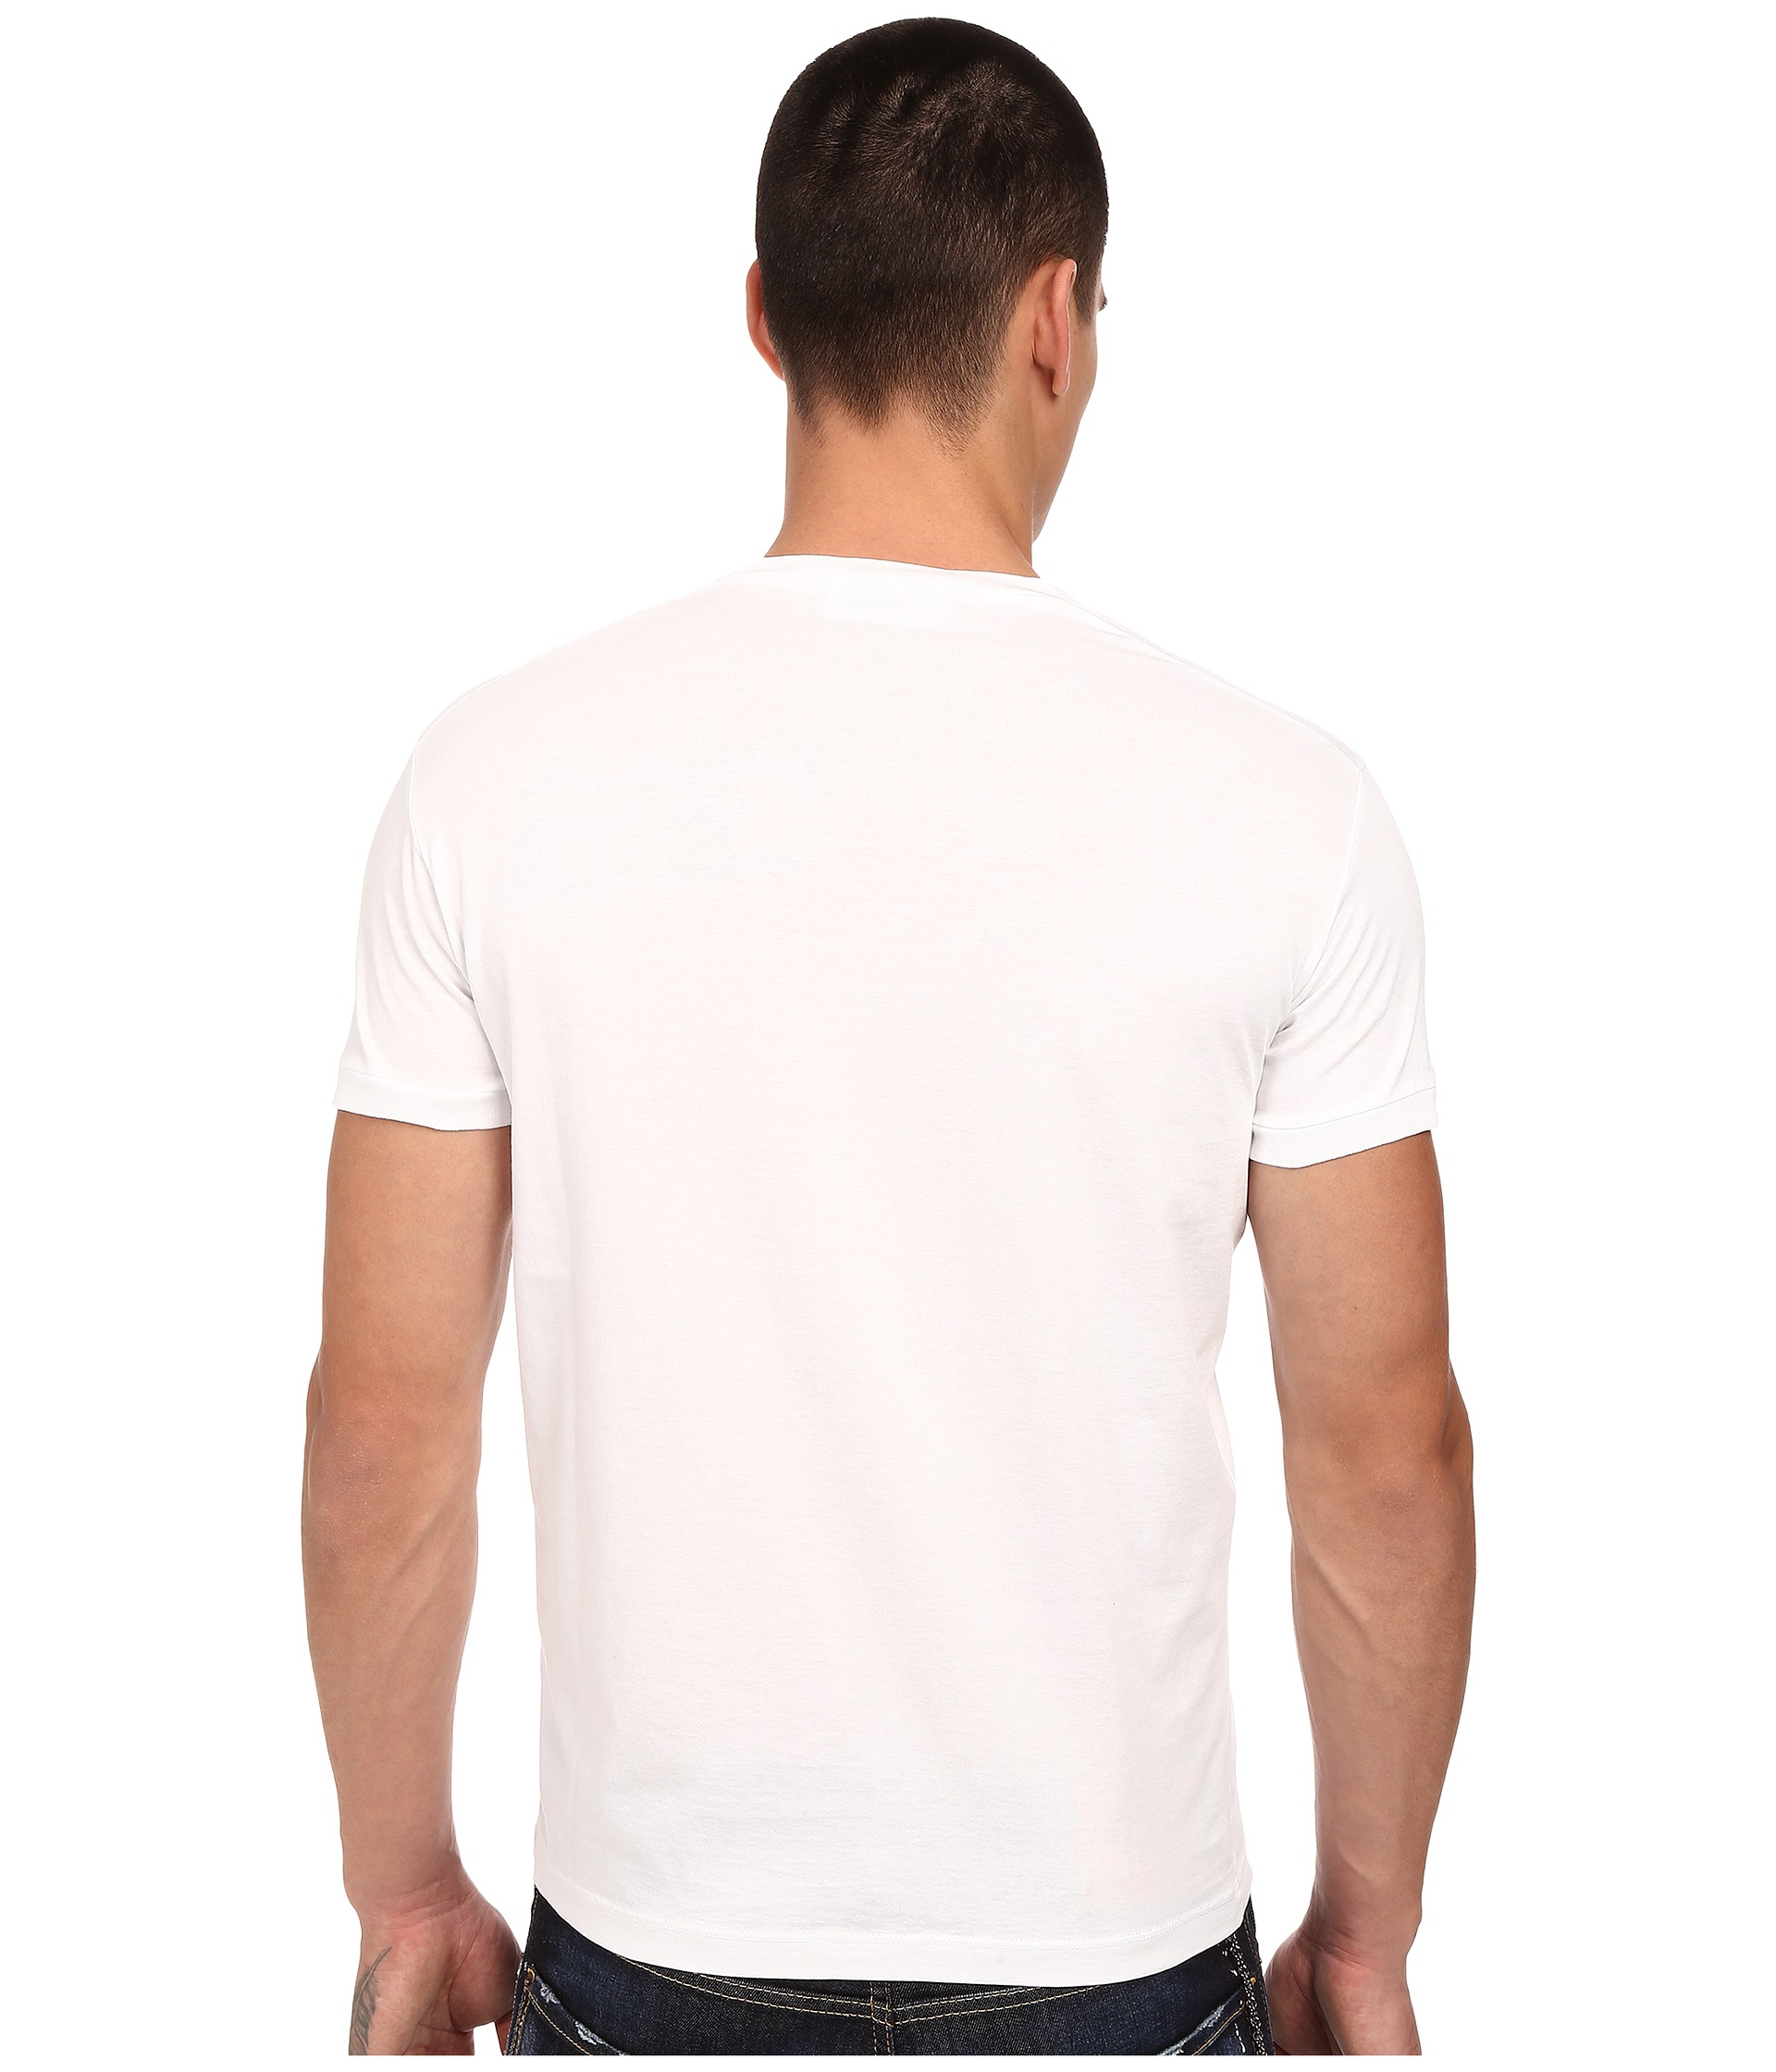 DSquared² Logo Pocket V-neck T-shirt in White for Men - Lyst